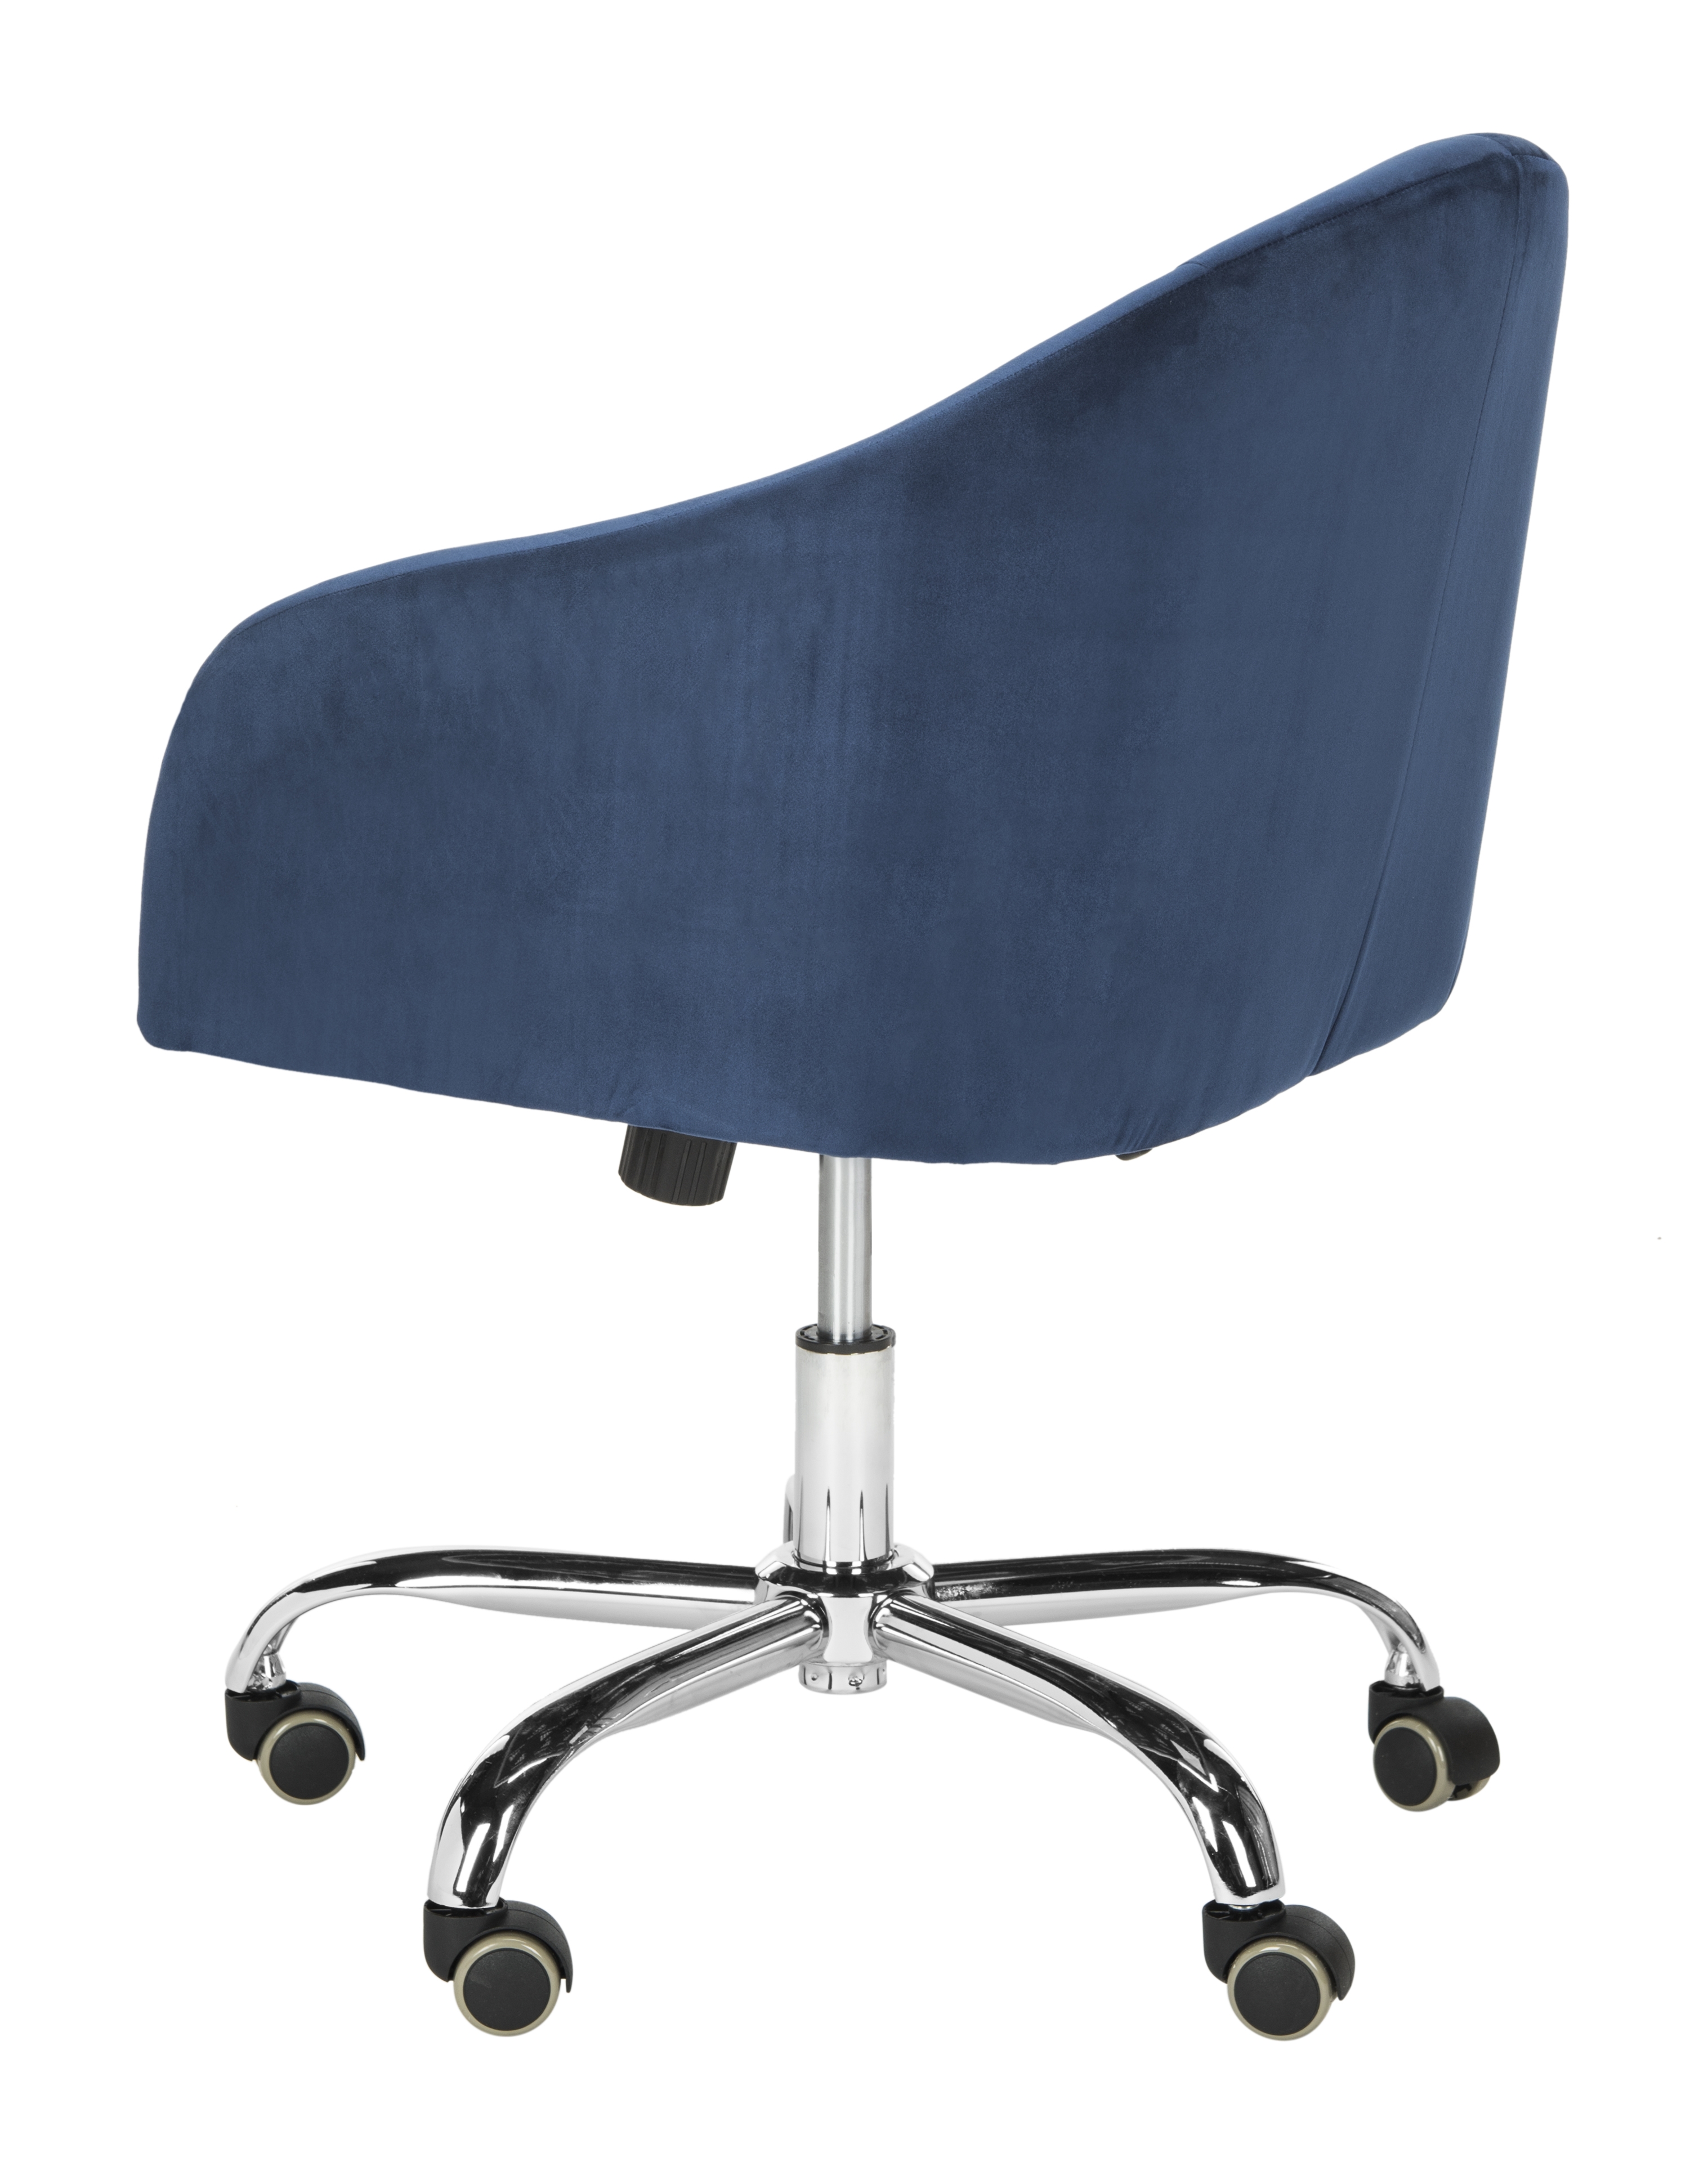 Amy Tufted Velvet Chrome Leg Swivel Office Chair - Navy/Chrome - Safavieh - Image 4